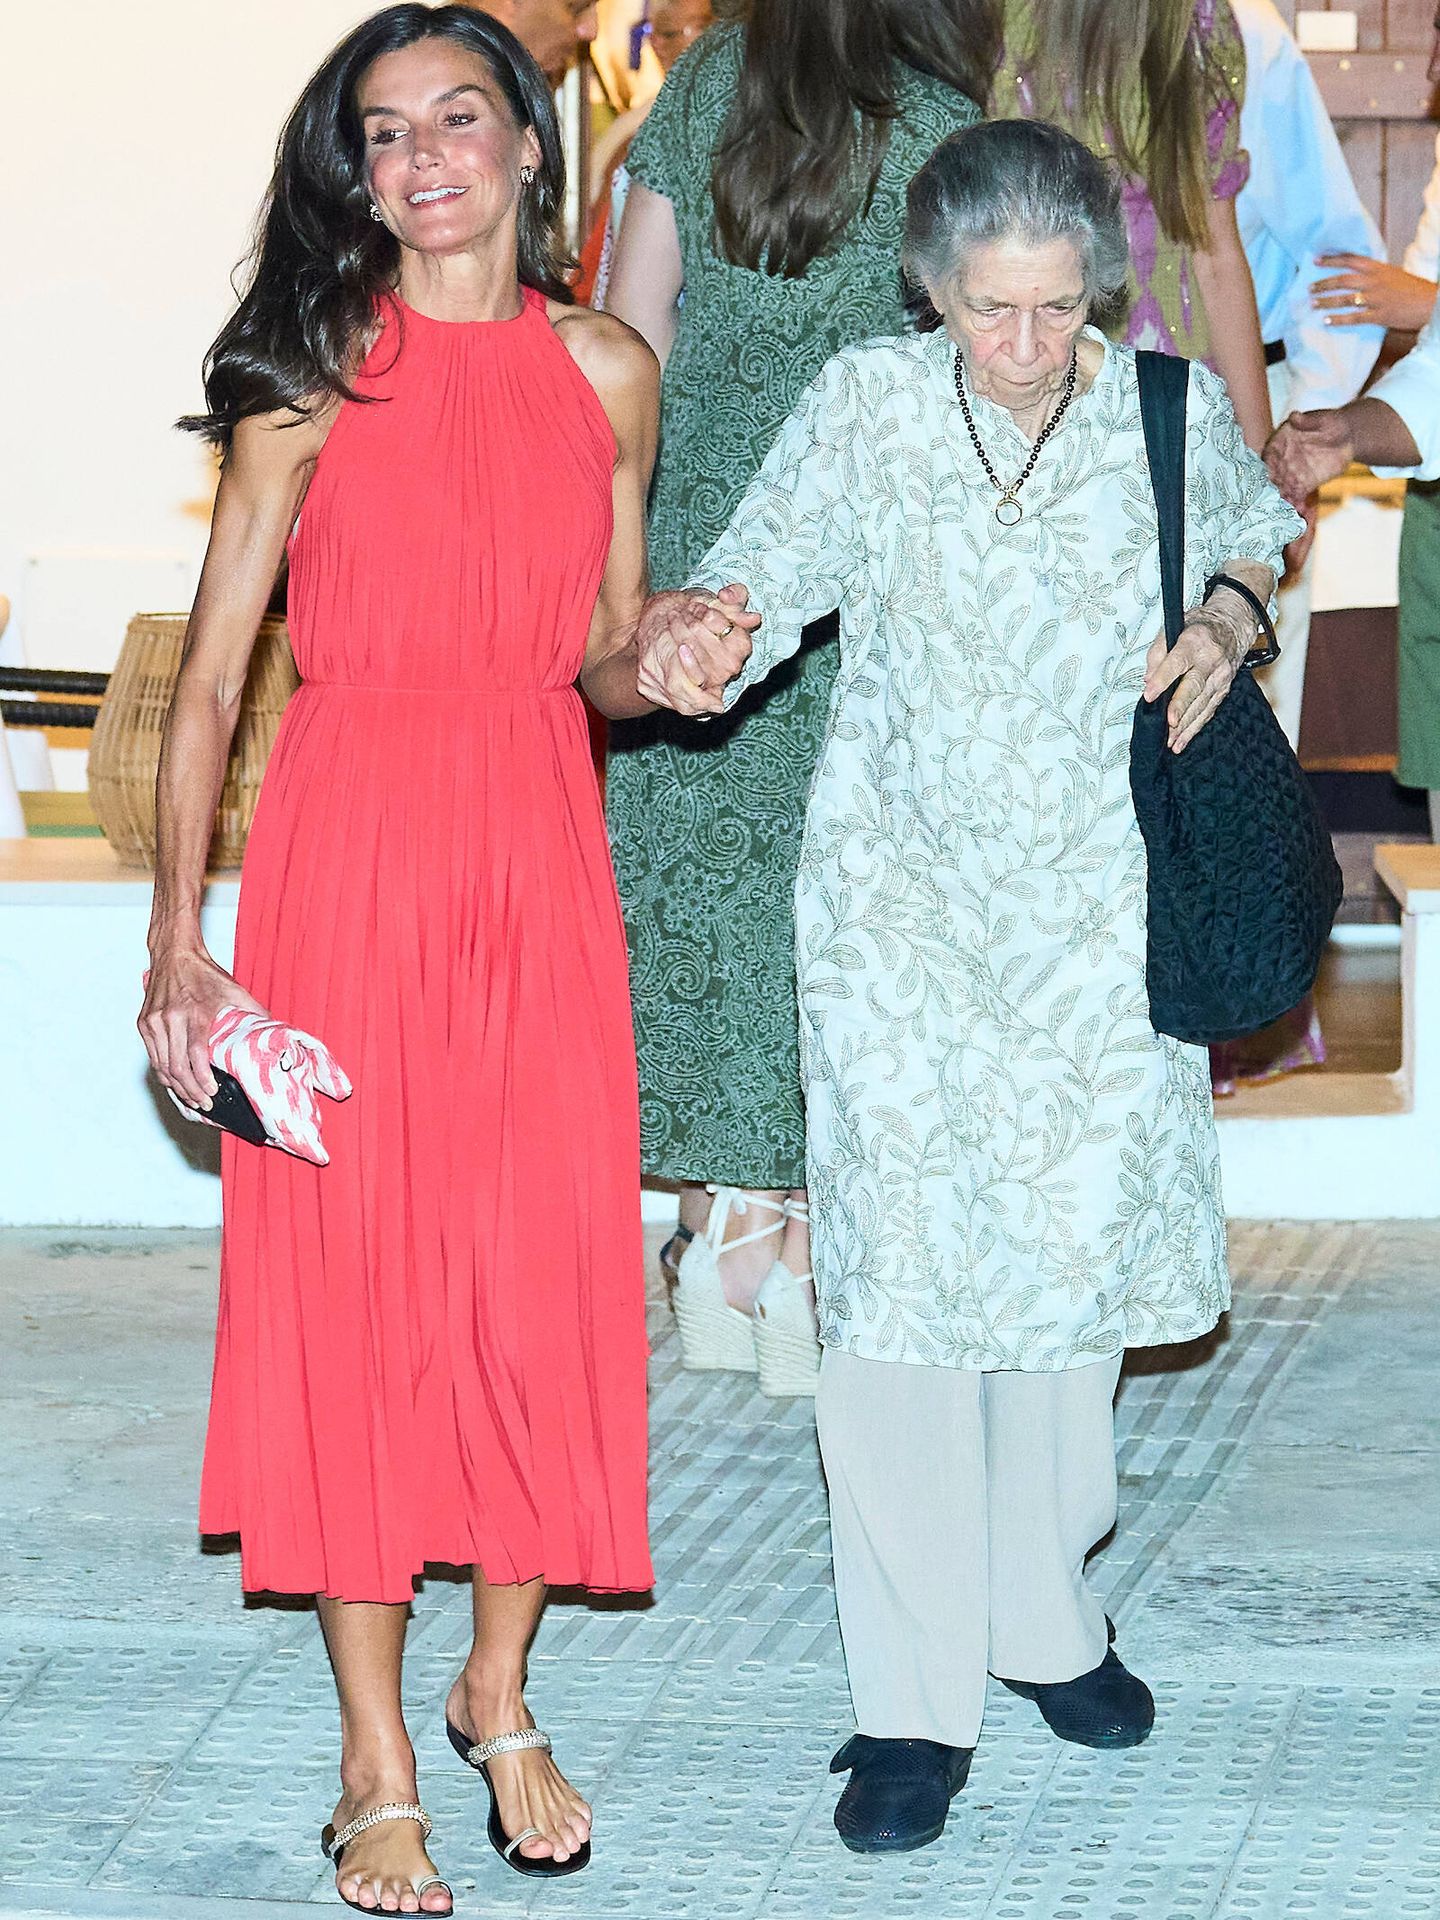 La reina Letizia, con vestido rojo de Mango, junto a la princesa Irene. (LP)